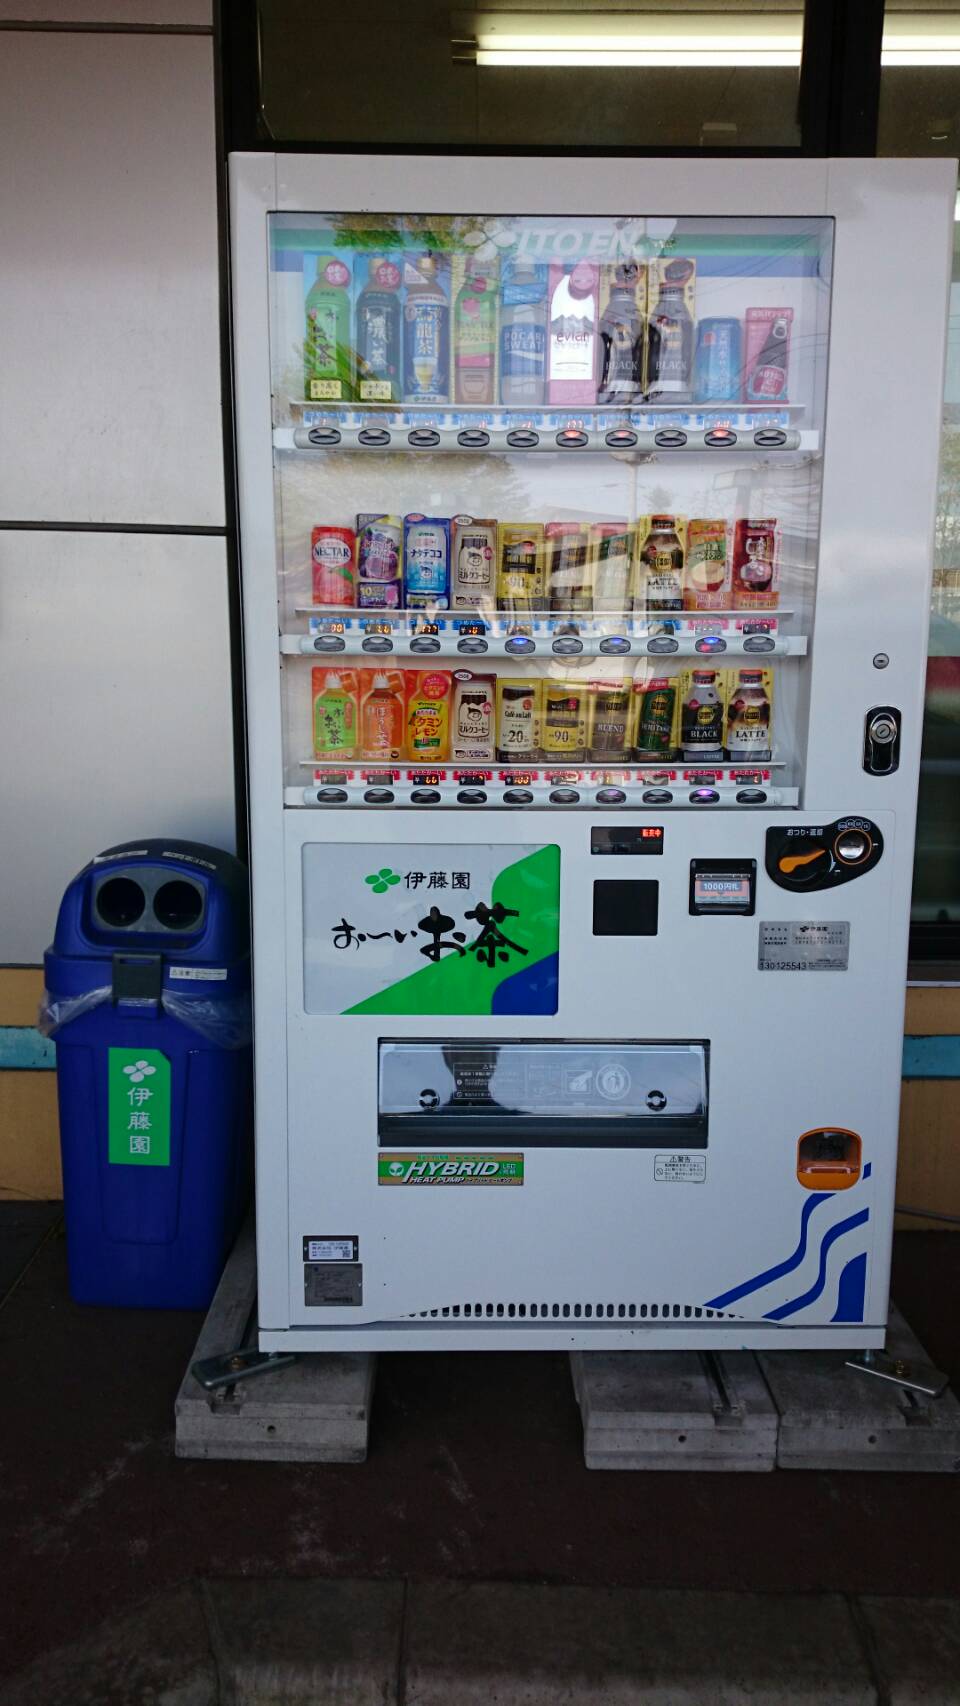 【伊藤園】自動販売機がわが社に設置された件 Ec 運営 代行 ごえん株式会社goen Inc 